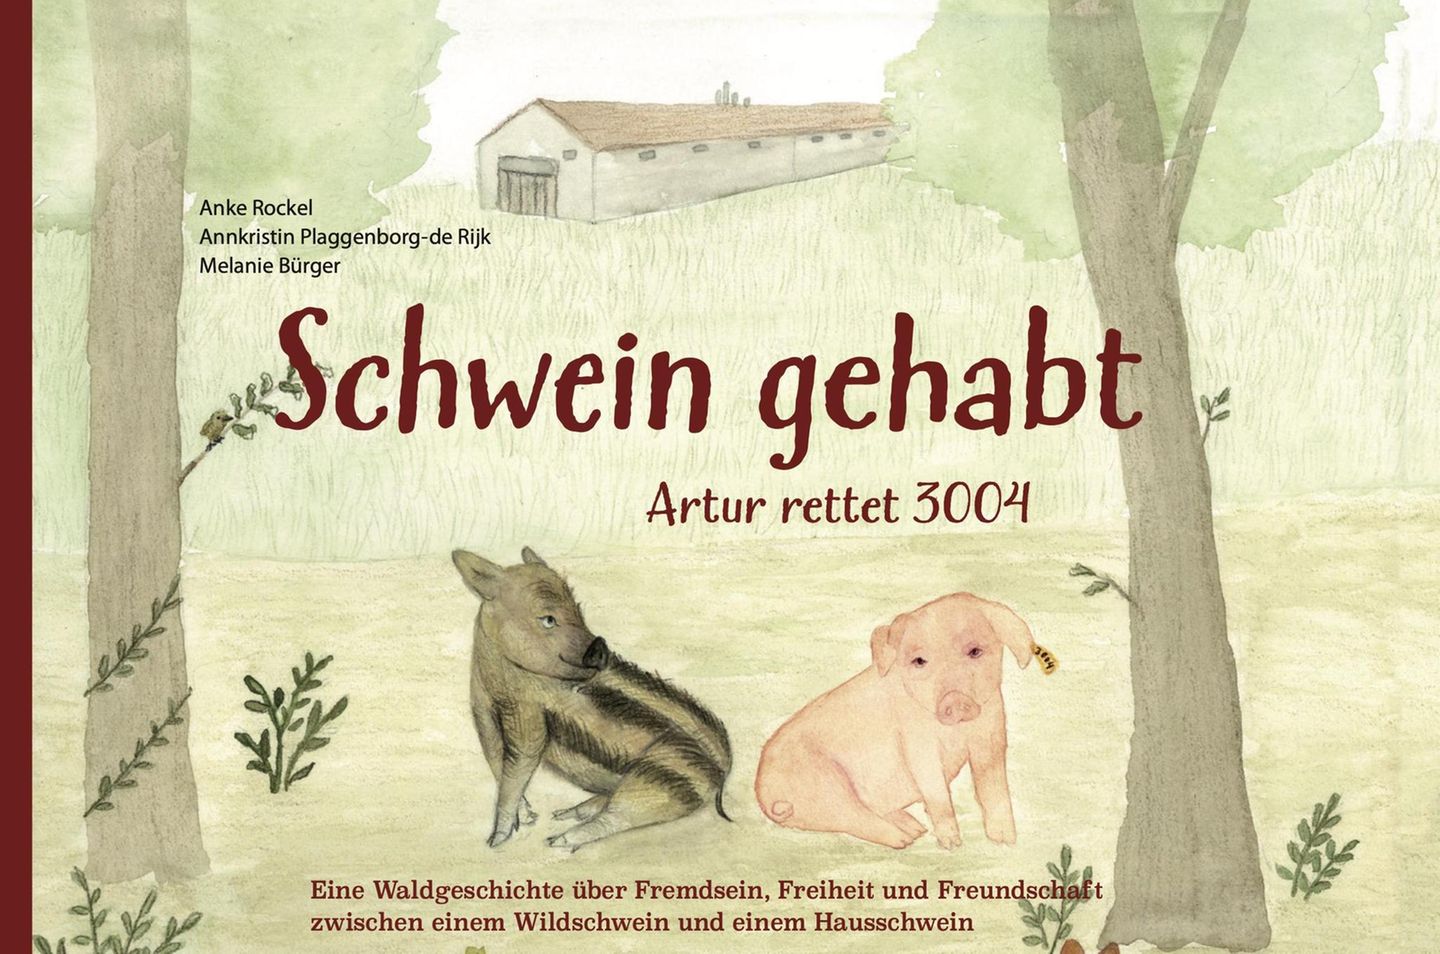 Kinderbuch "Schwein gehabt – Artur retten 3004"